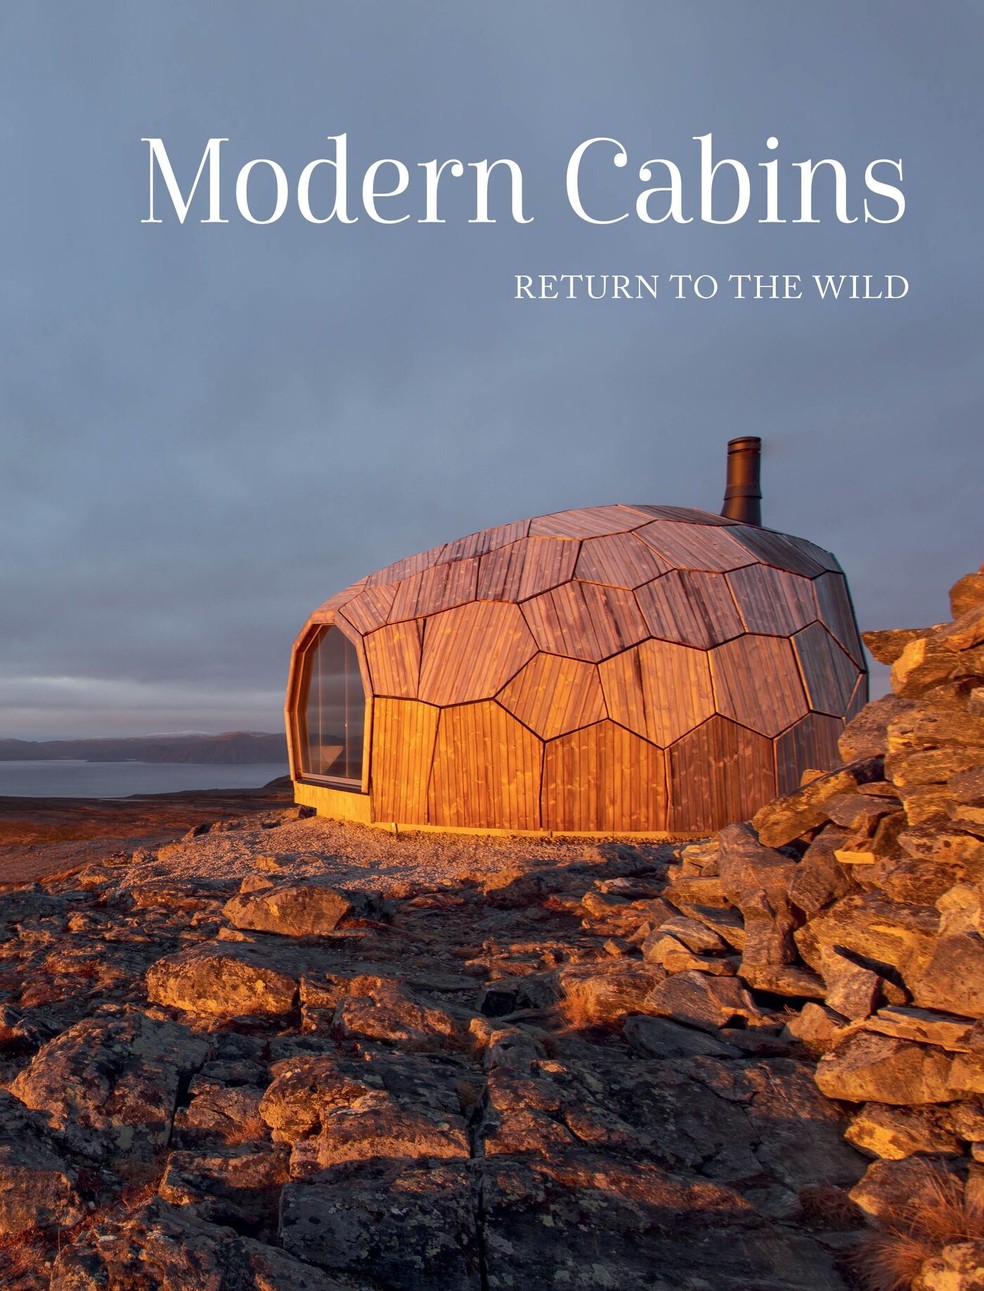 Capa do table book "Modern Cabins", que oferece um escape do mundo urbano aos leitores e arquitetos — Foto: Carol Legget PR | Divulgação